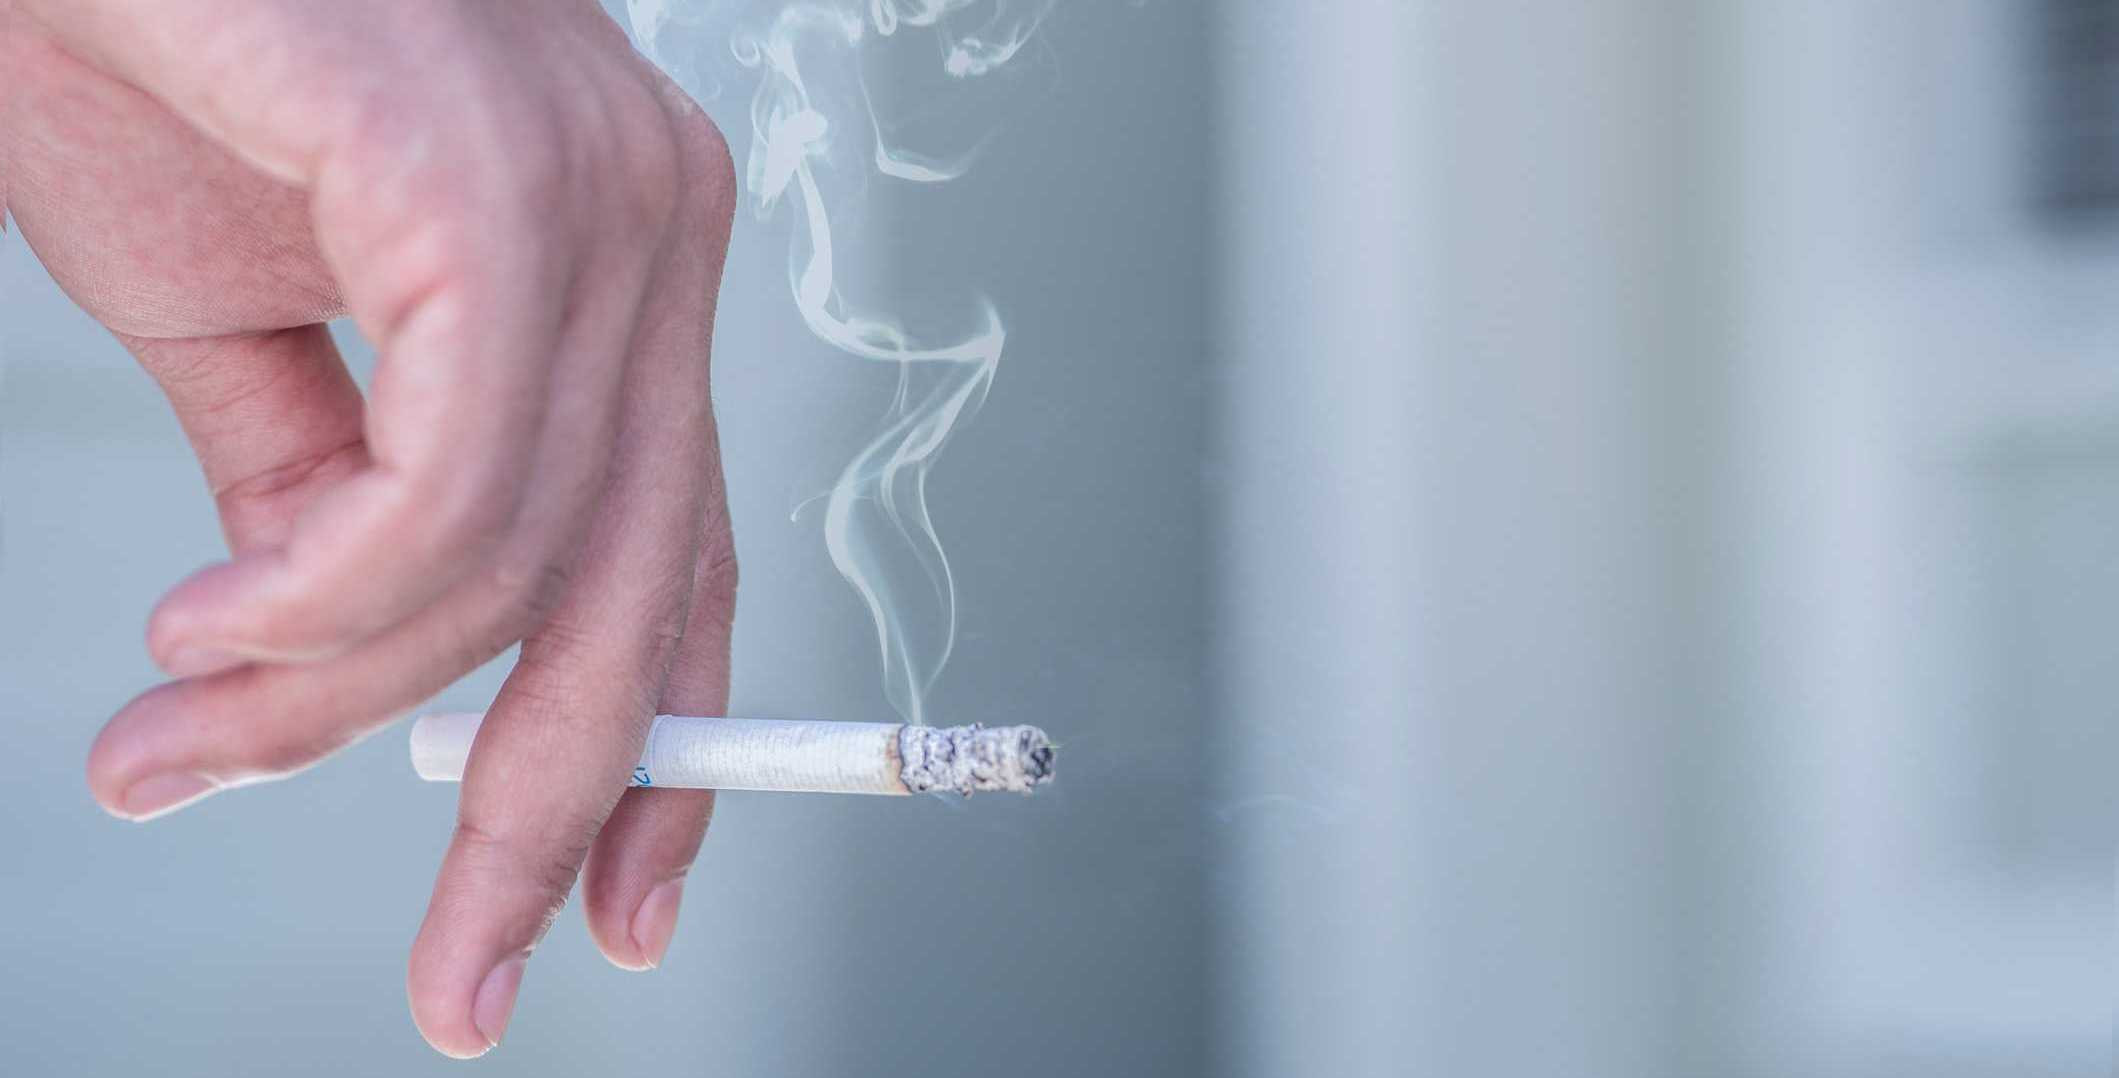 अपरेसनको चार हप्ताअघि धुम्रपान छाडे संक्रमणको कम खतरा